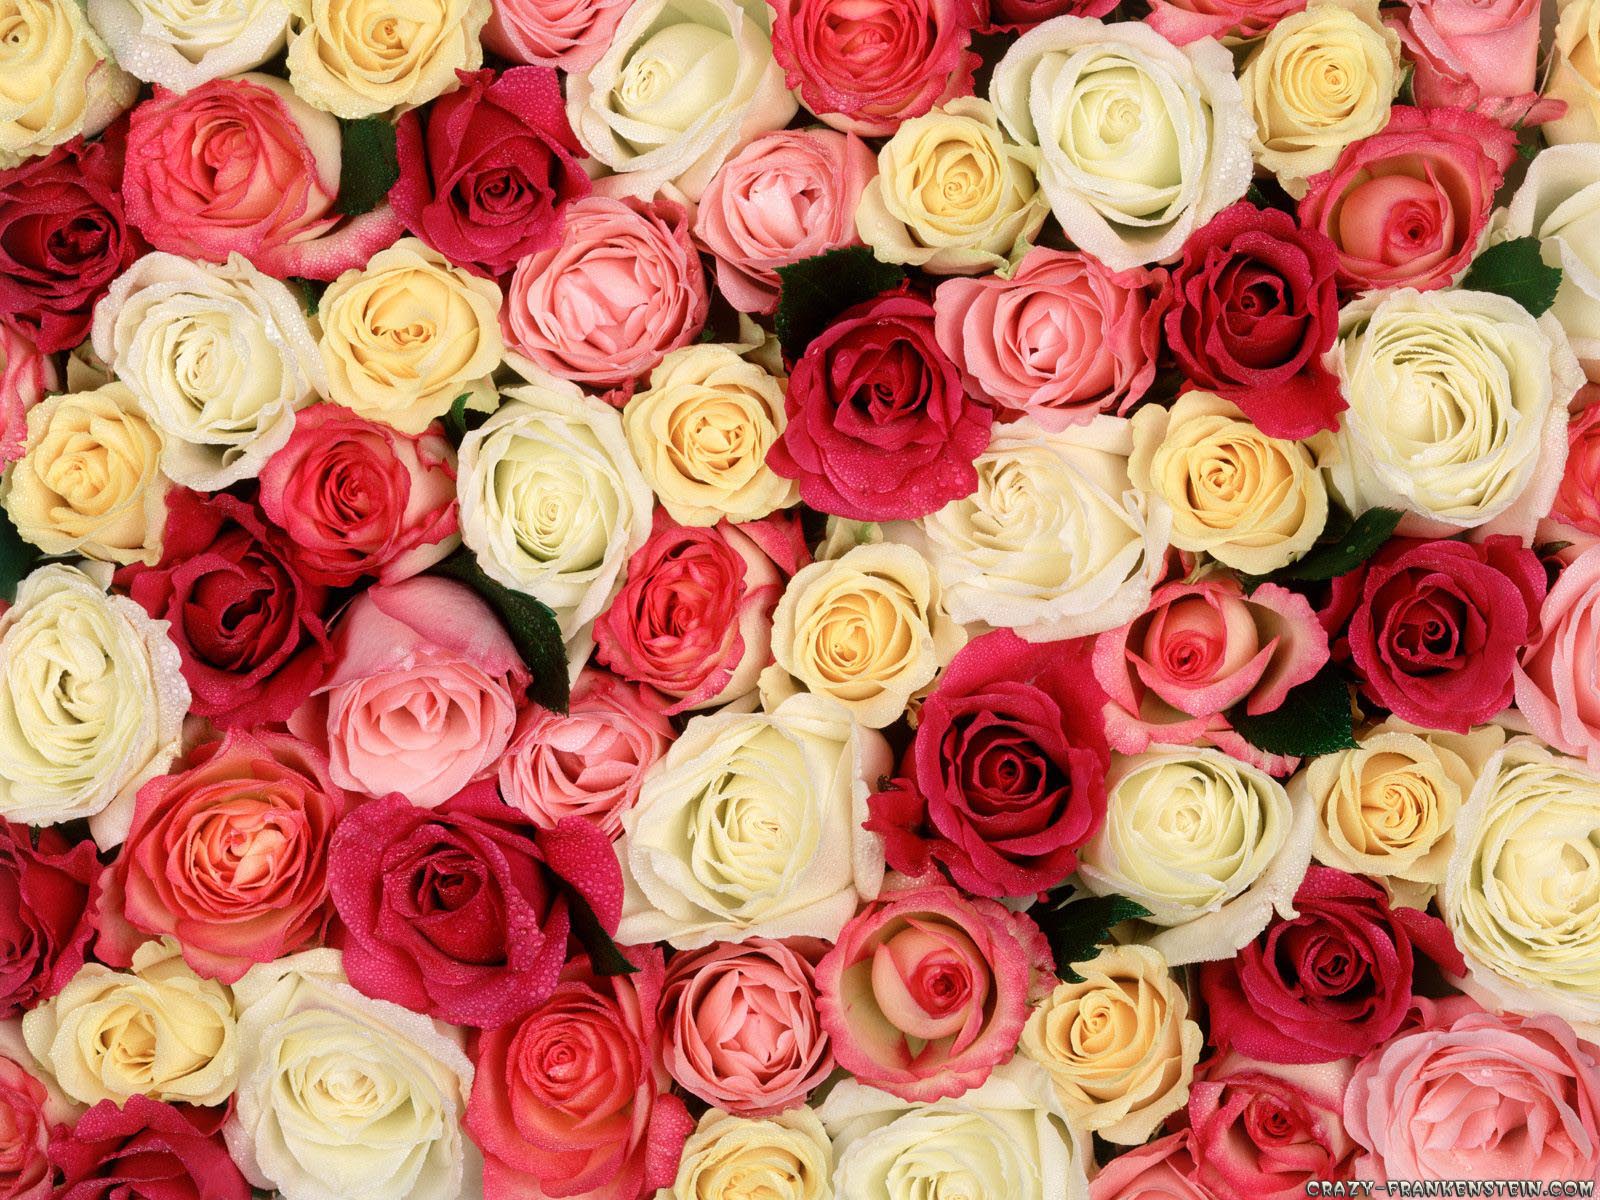 roses-wallpaper-3.jpg